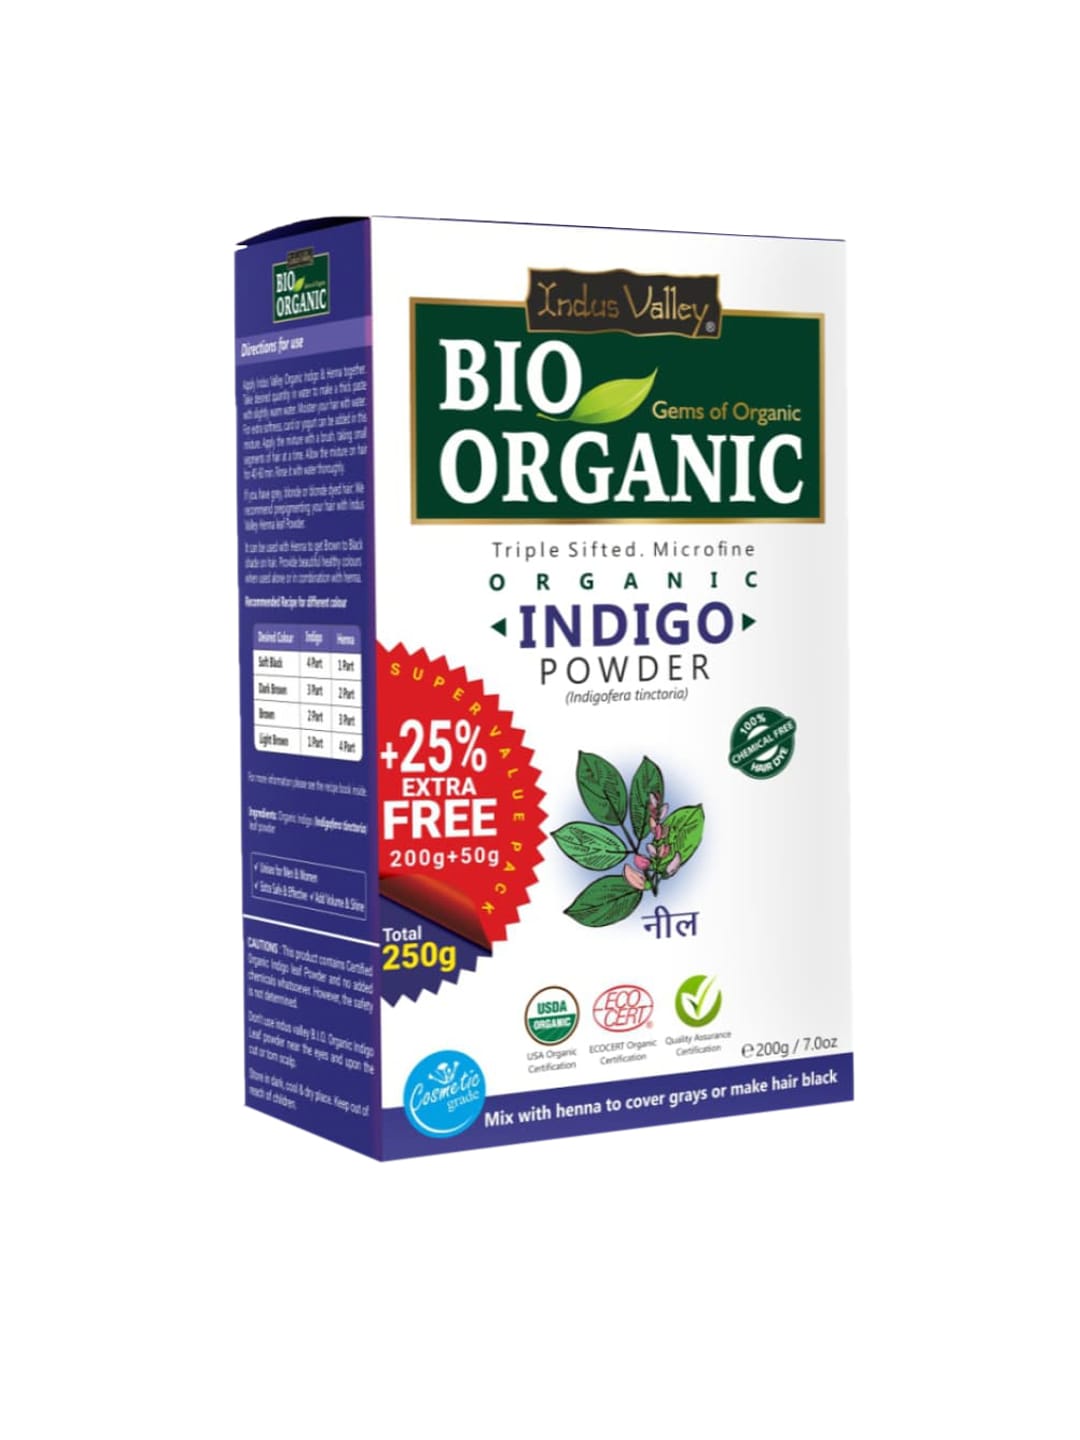 Indus Valley Bio Organic Pure Indigo Leaf Powder- 250 gm Price in India